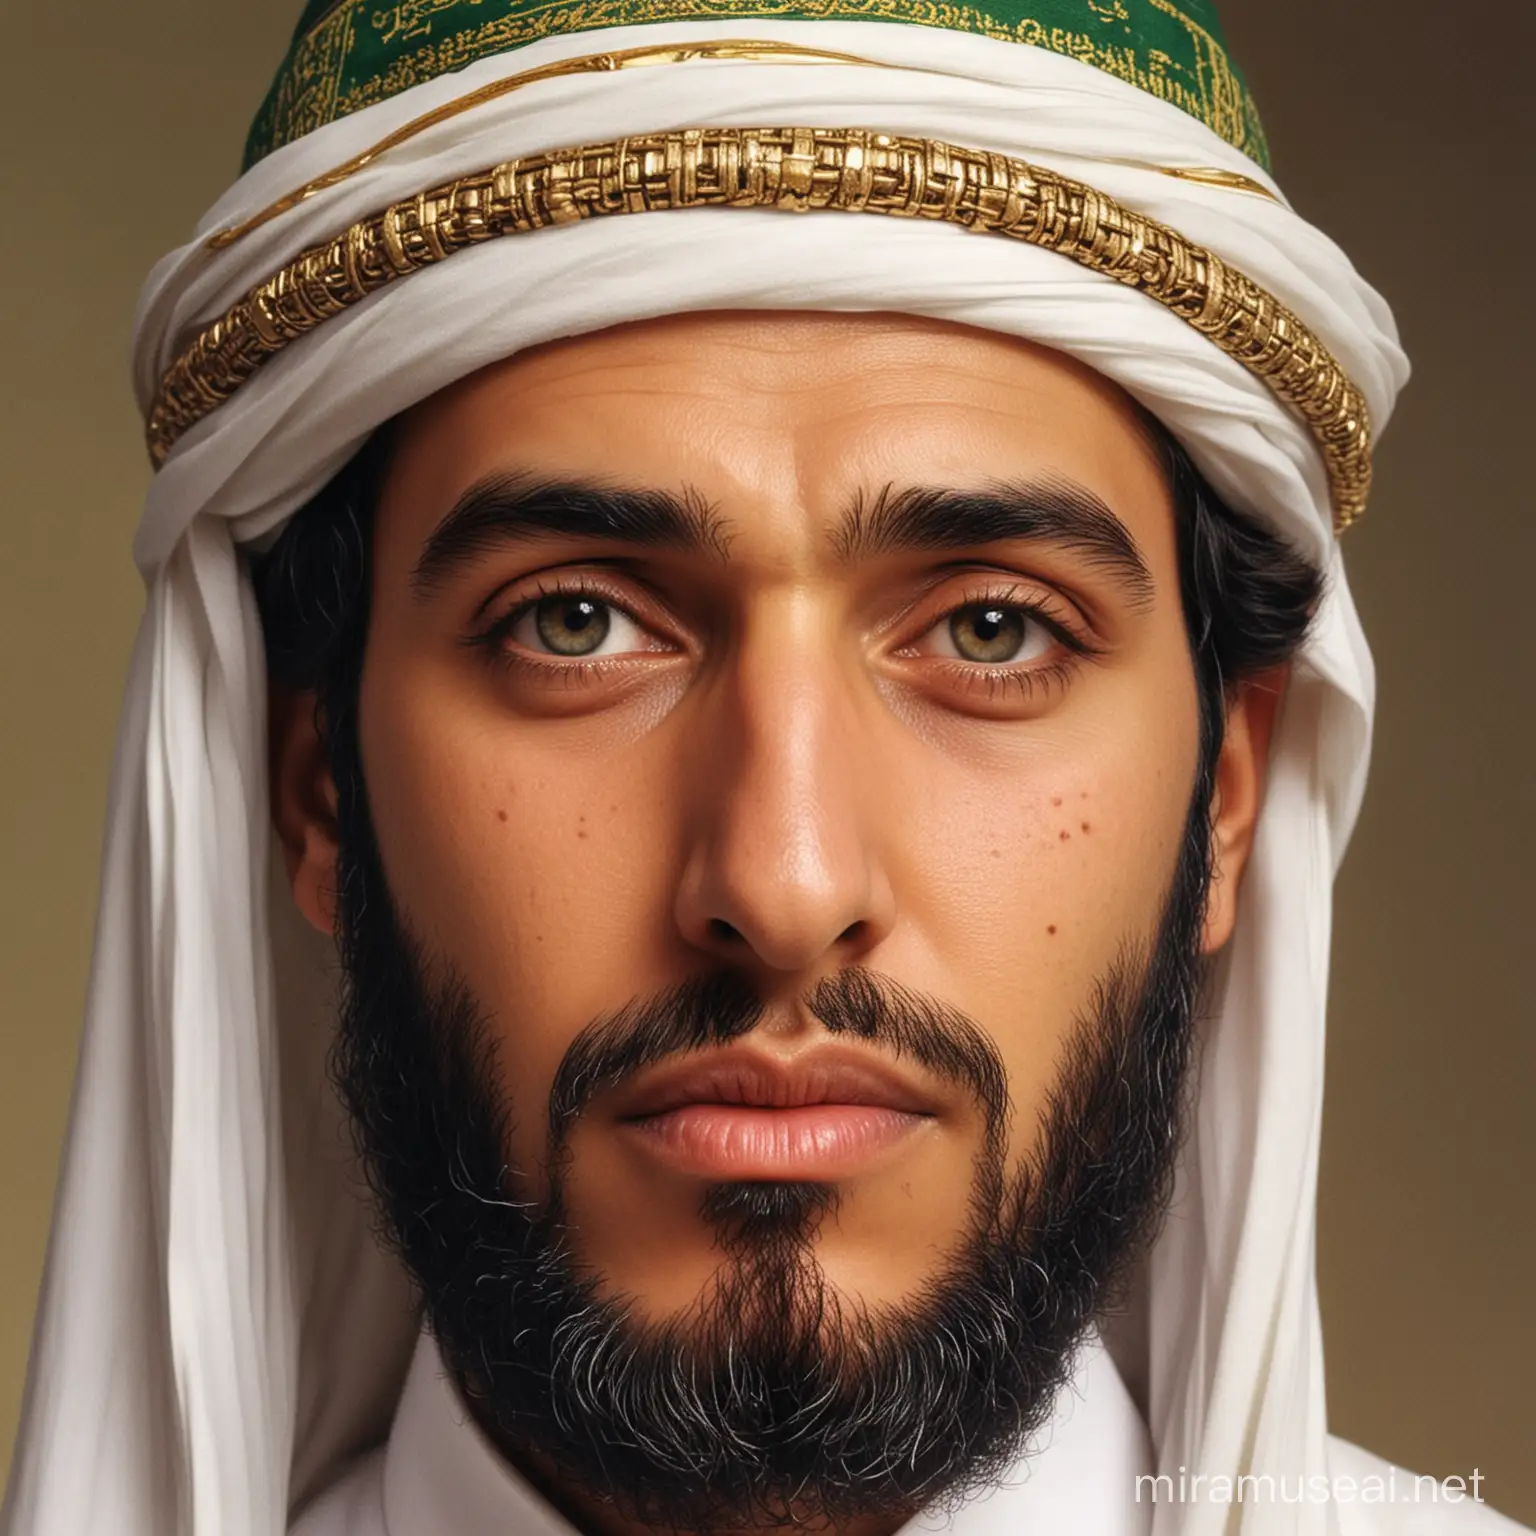 True face of Prophet Muhammad PBUH